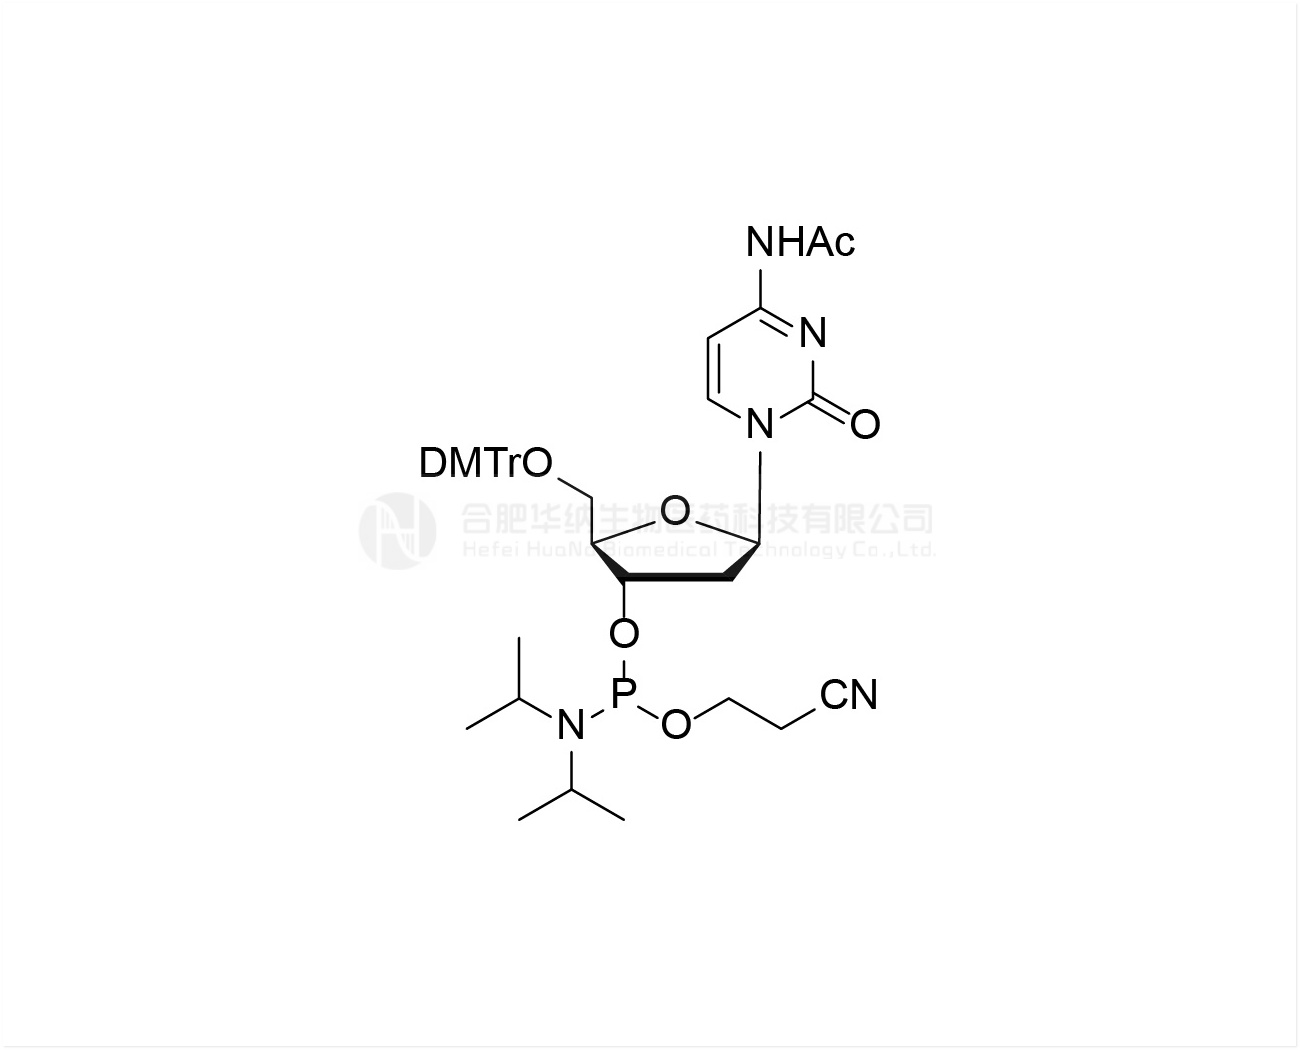 DMTr-dC(Ac)-3'-CE-Phosphoramidite